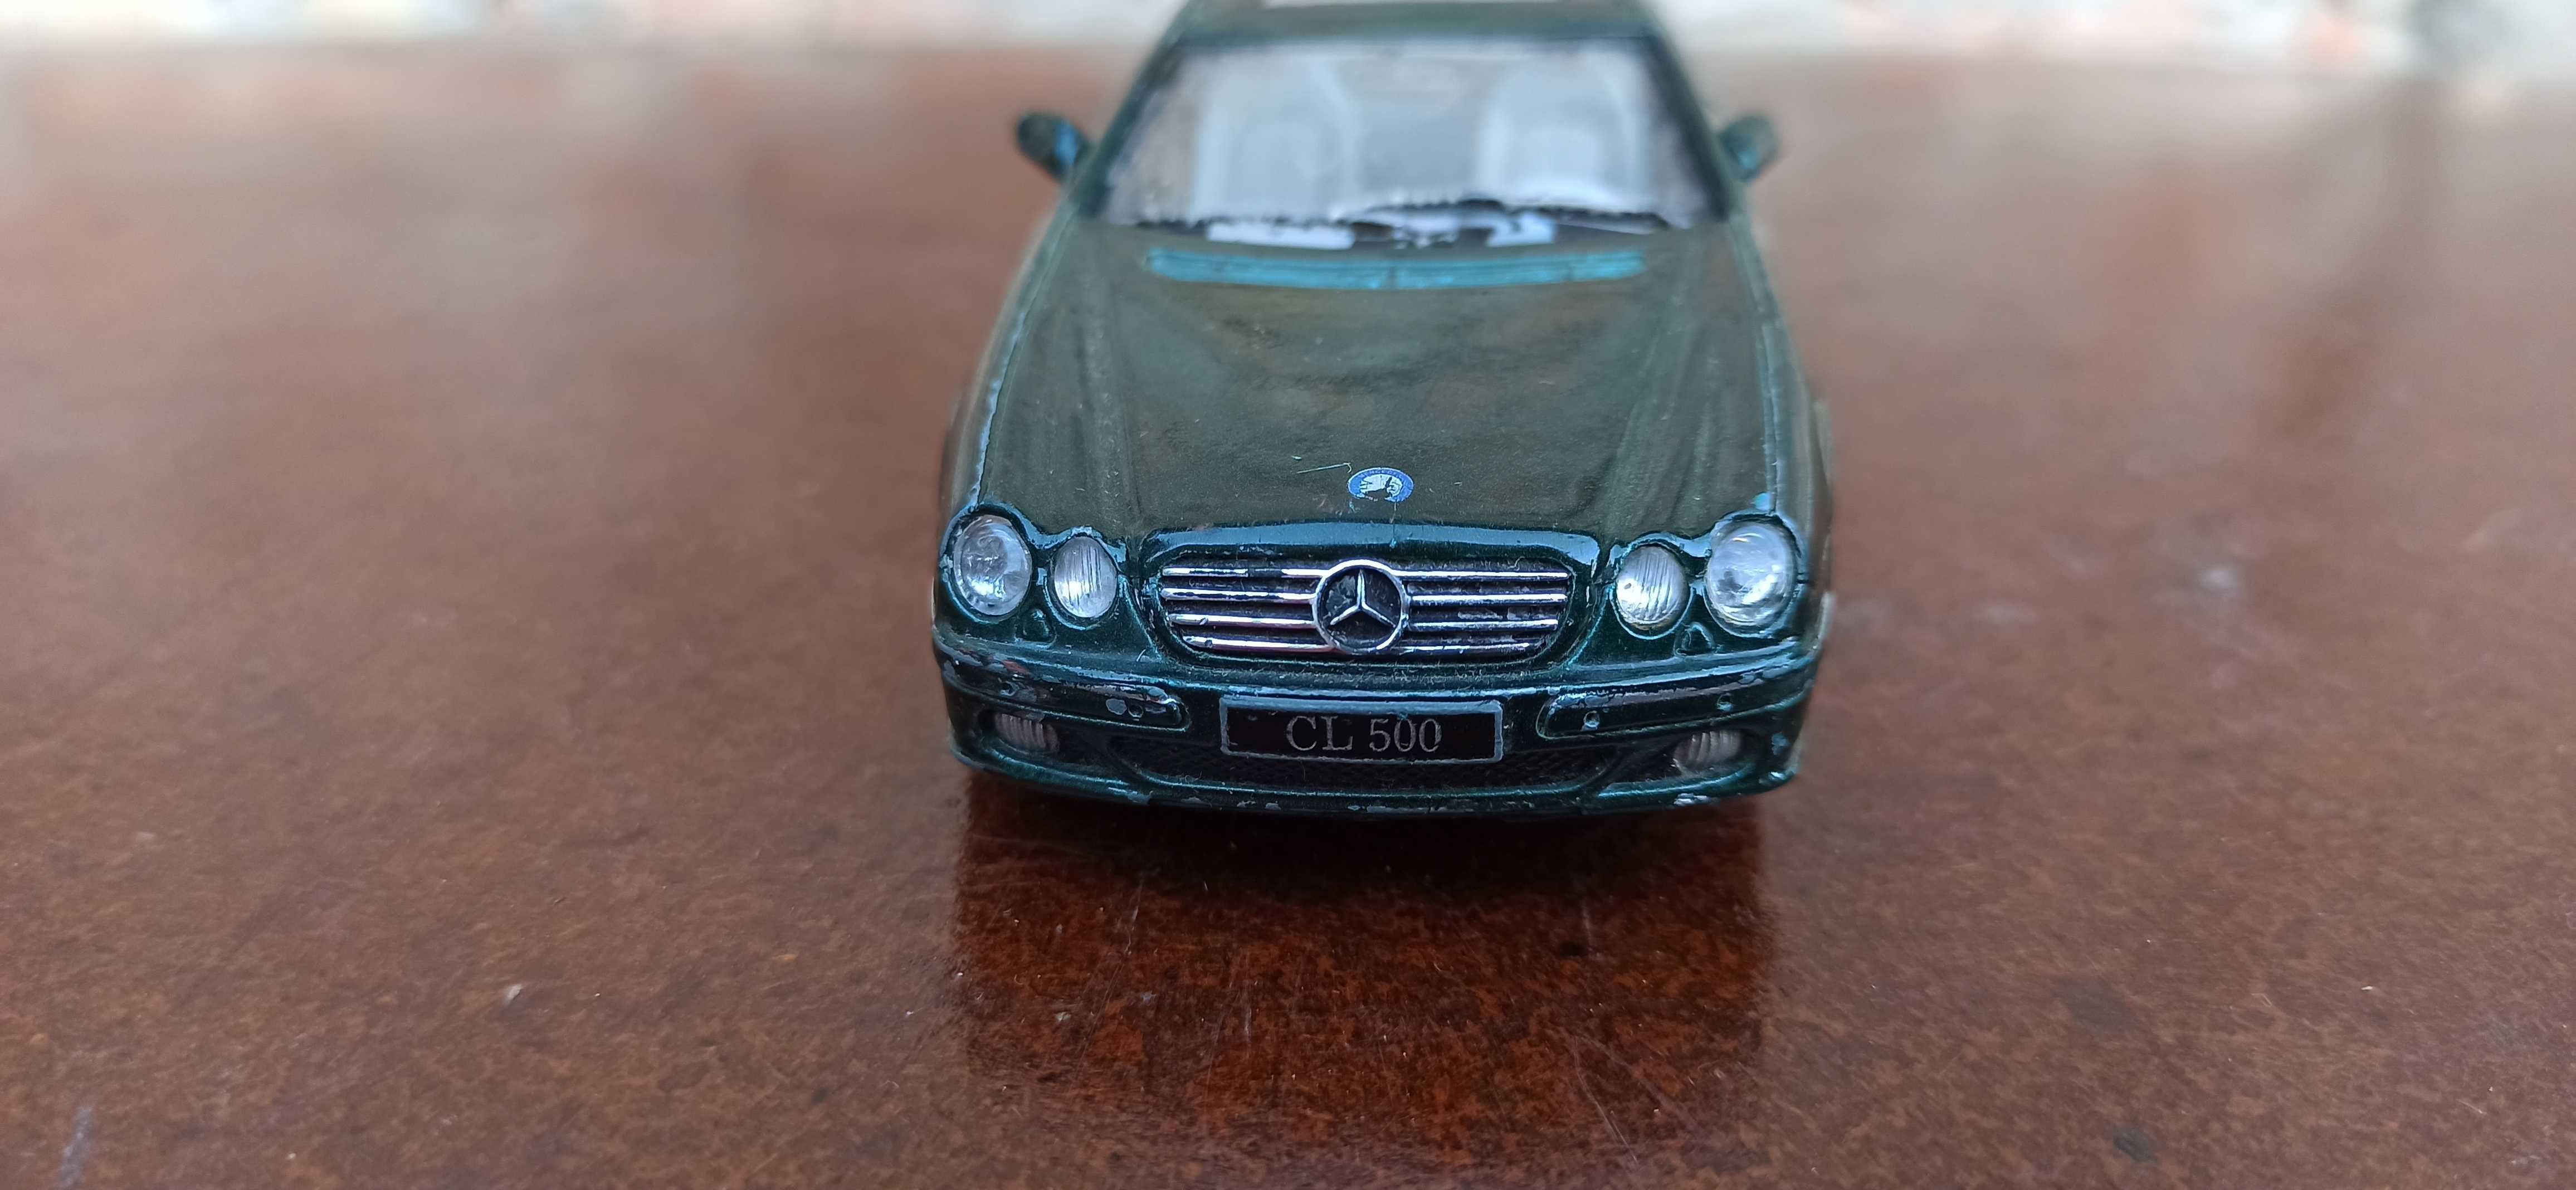 Mercedes - Benz CL 500 модельная машинка металлическая